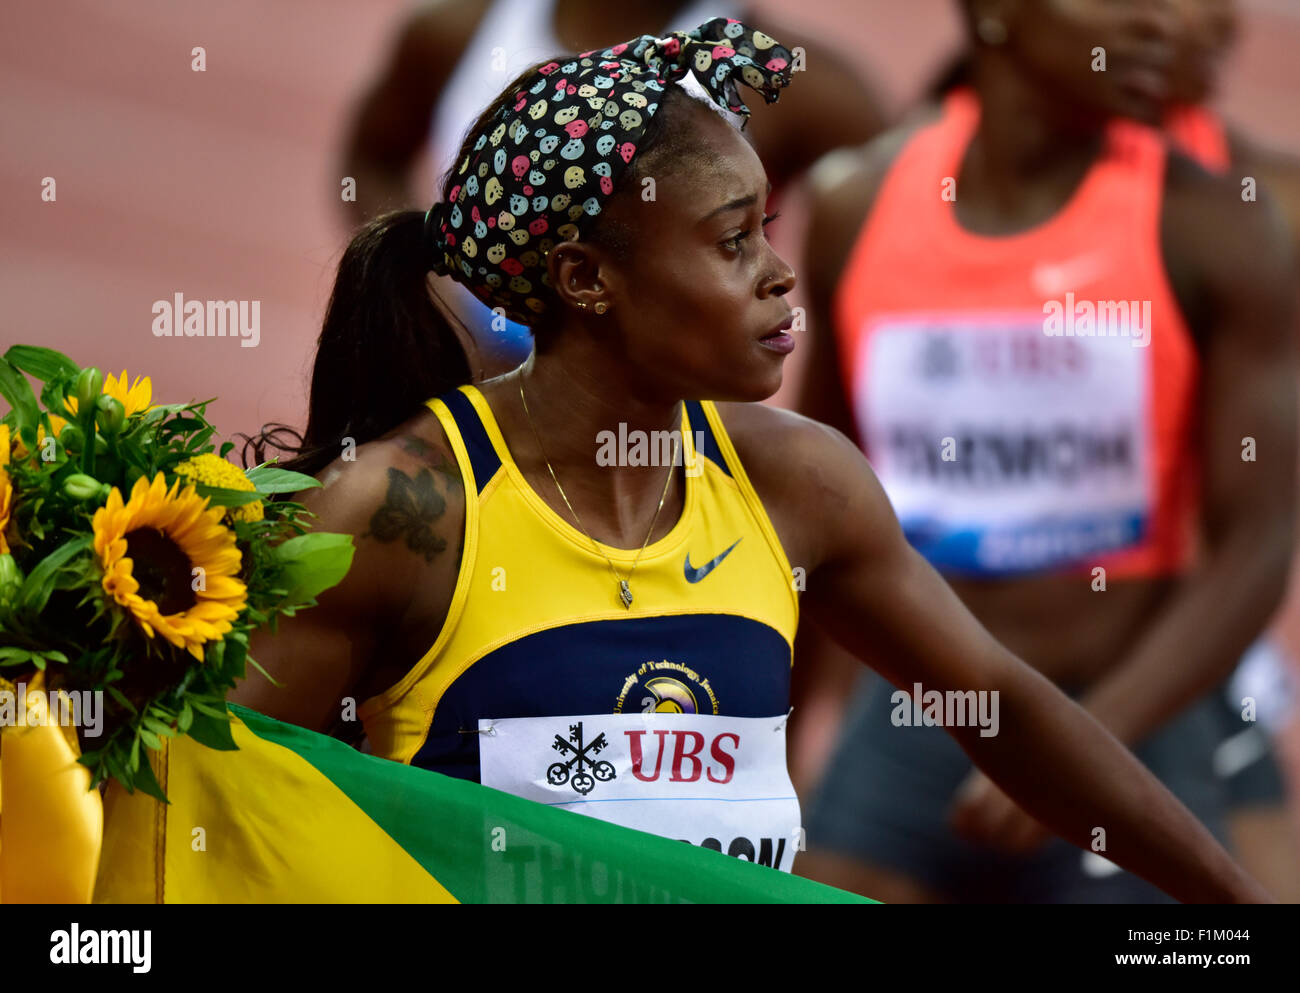 Zurich, Suisse, 06th Nov, 2015. Le sprinter jamaïcain Elaine Thompson après avoir remporté le women's 100m la chaleur à la Zurich 2015 IAAF Diamond League meeting d'athlétisme. Crédit : Erik Tham/Alamy Live News Banque D'Images